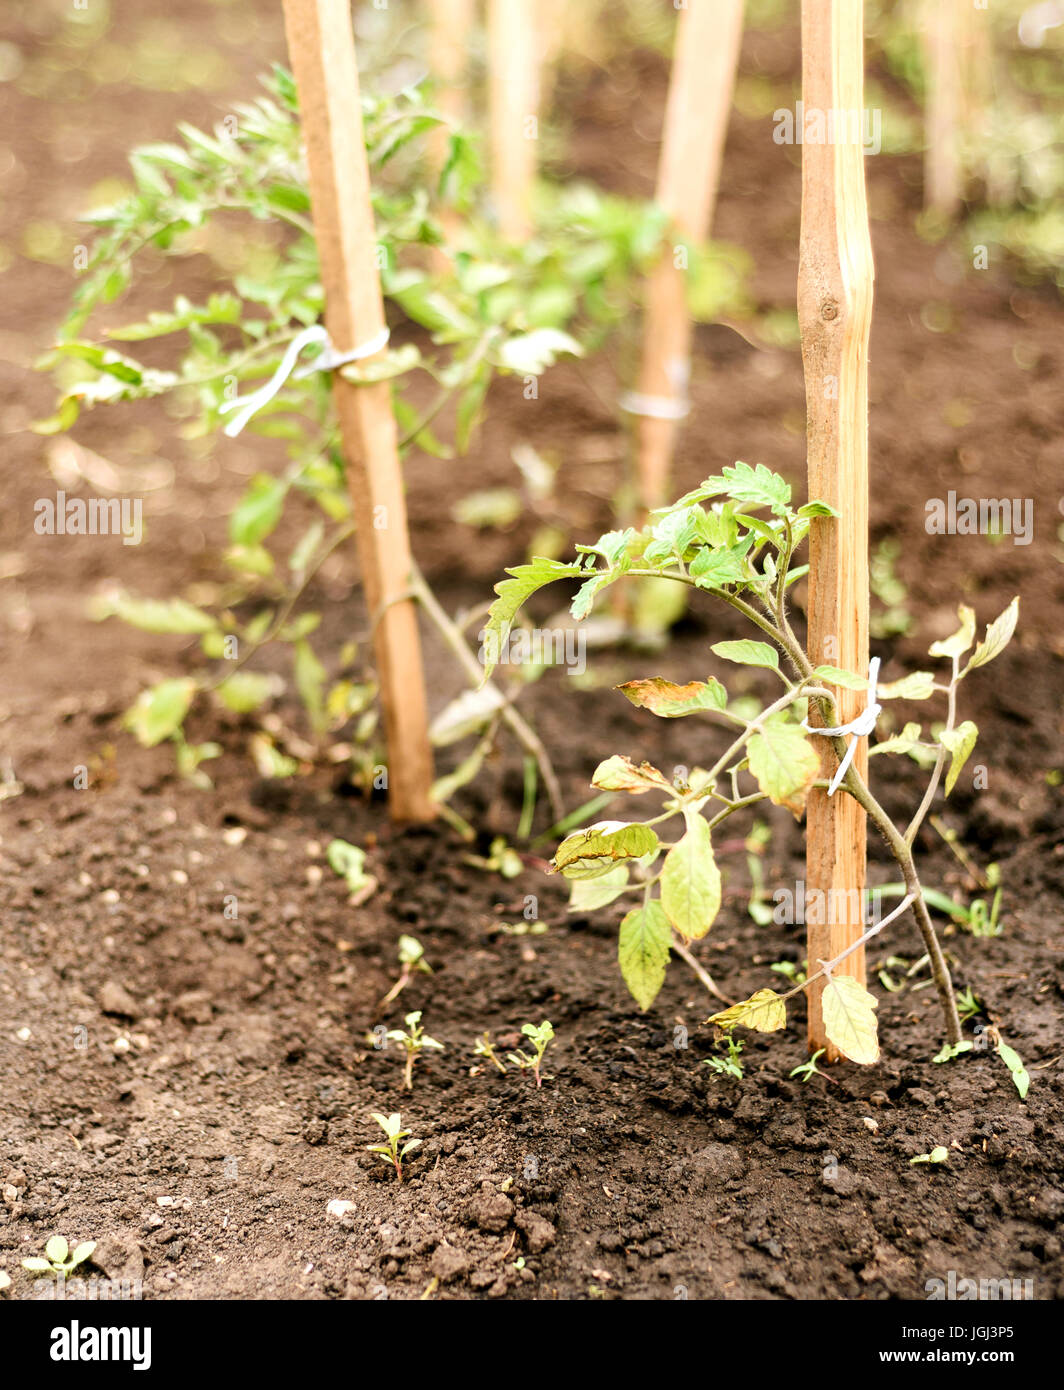 Las plantas de tomate dañado por el fuerte viento con hojas windscorched marrón Foto de stock